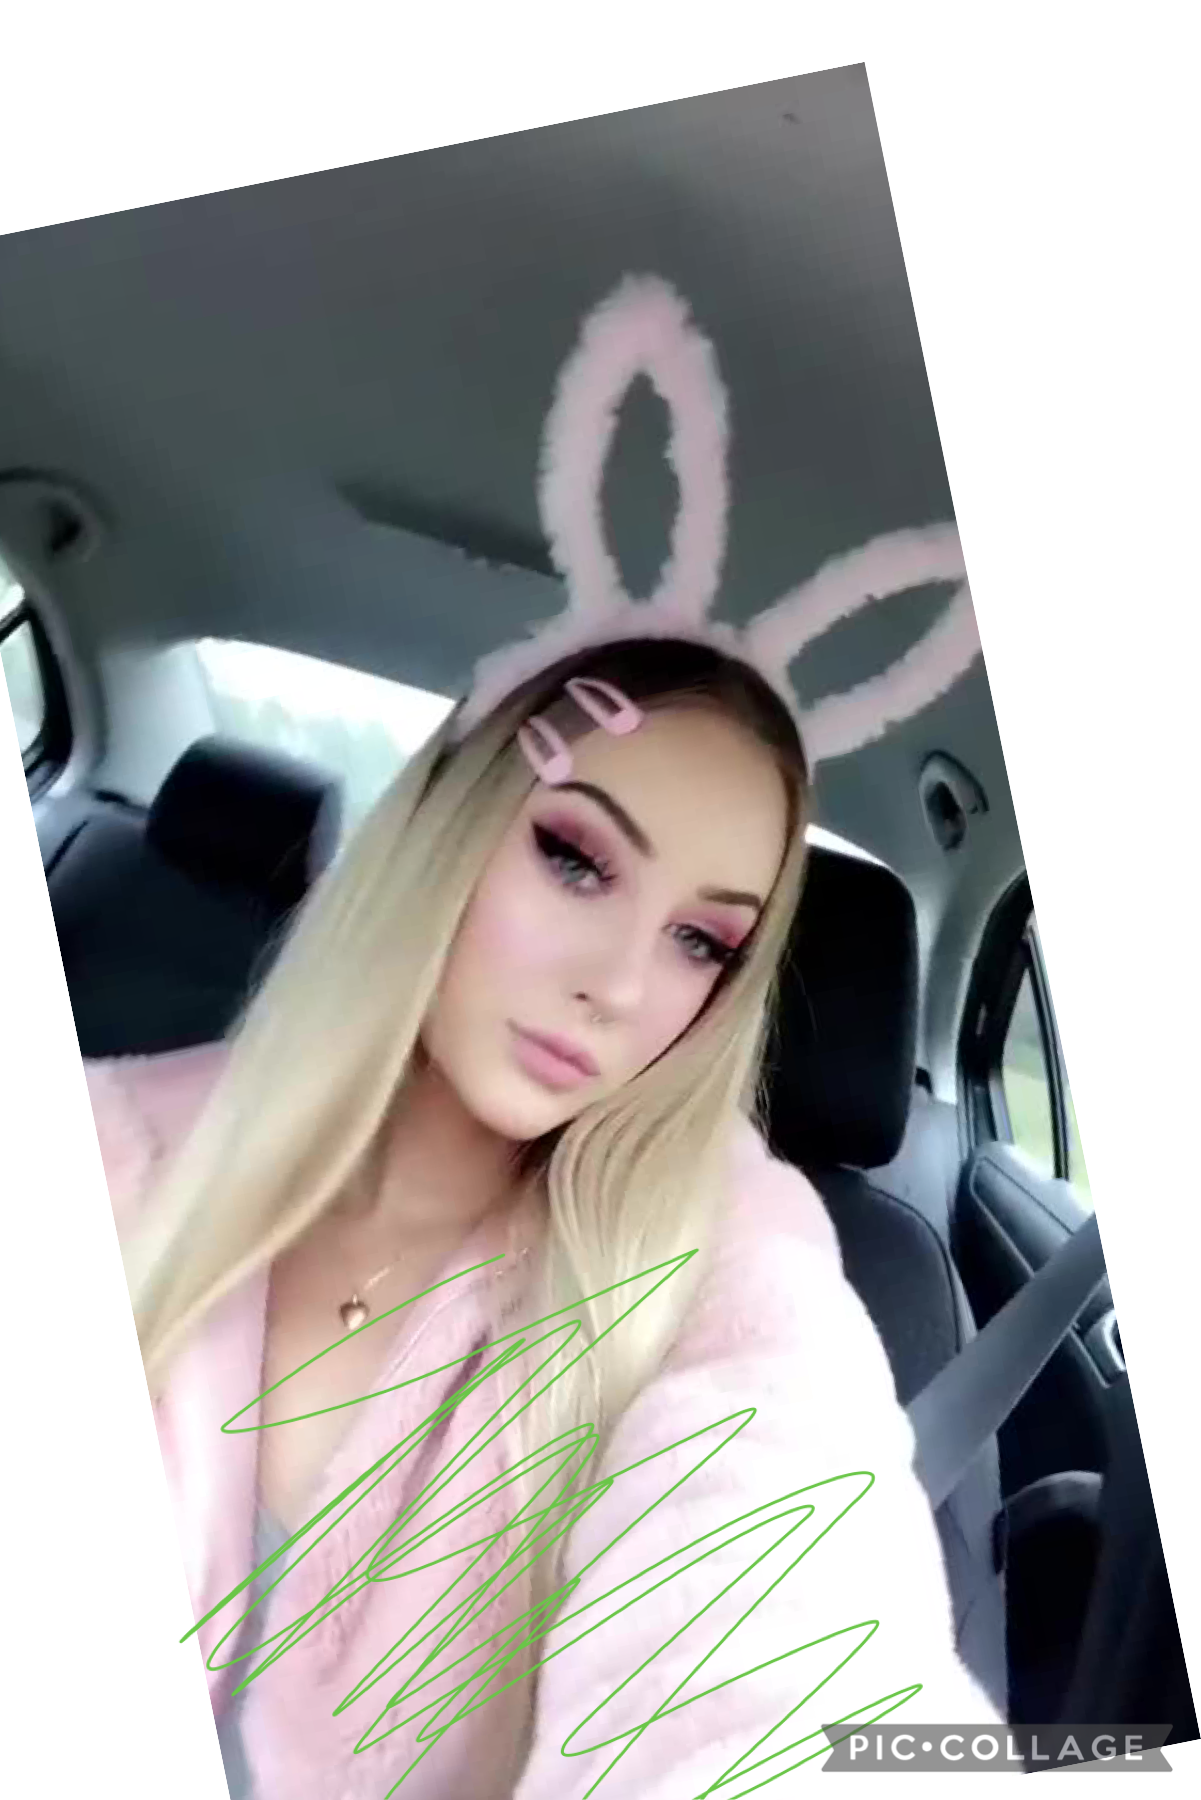 I’m a cute bunny 🐰 